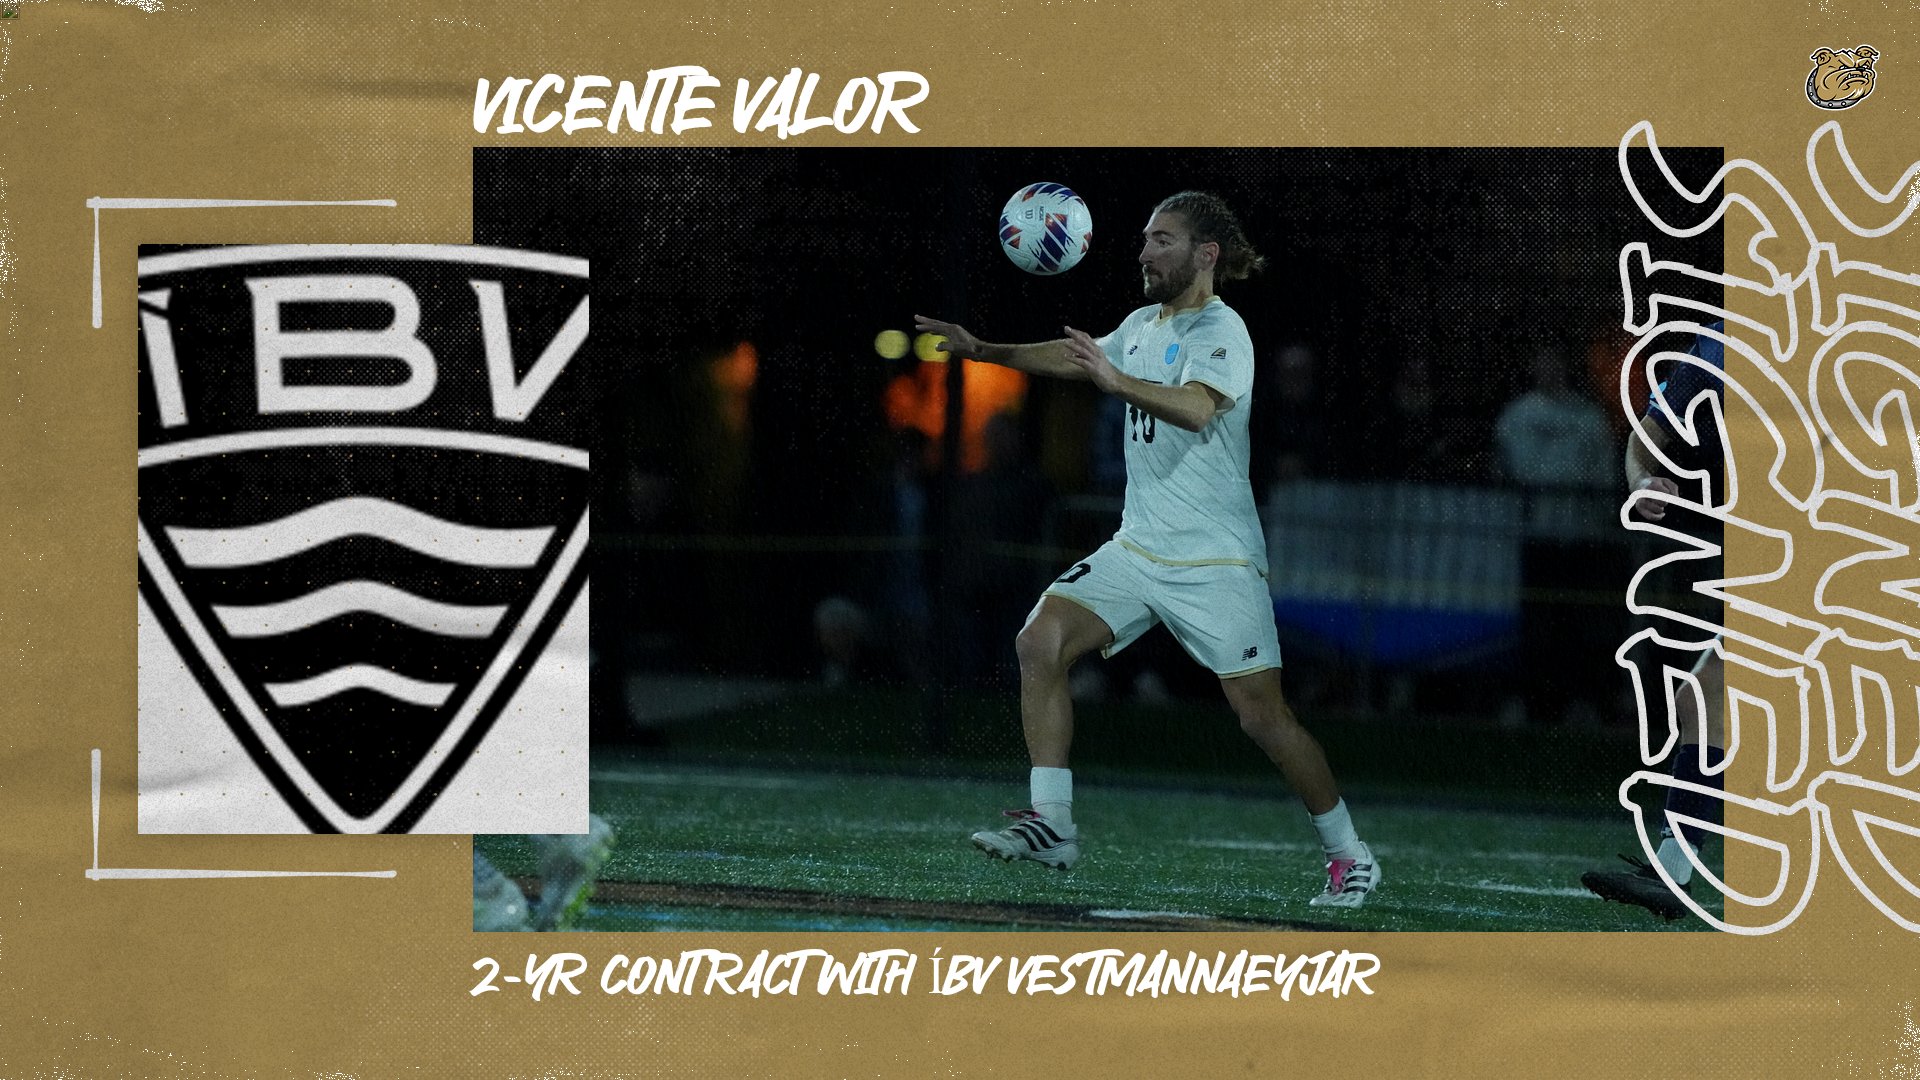 Valor signs with Icelandic side ÍBV Vestmannaeyjar